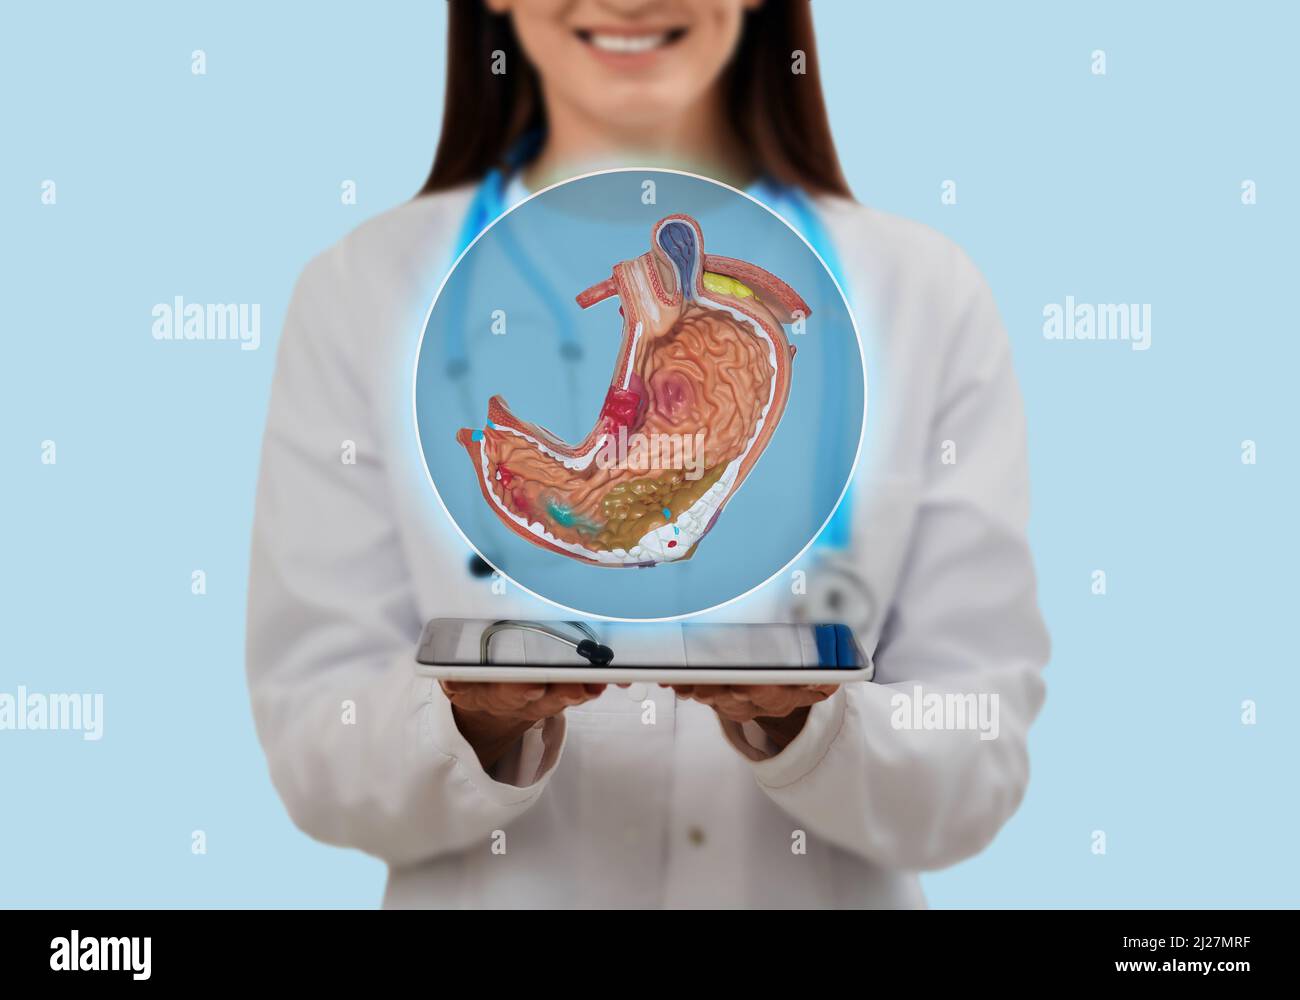 Arzt mit virtuellem anatomischem Modell des Magens, das das Magengesundheitskonzept im Gesundheitswesen zeigt. Diagnostik und Therapie der Magenkrankheit Stockfoto